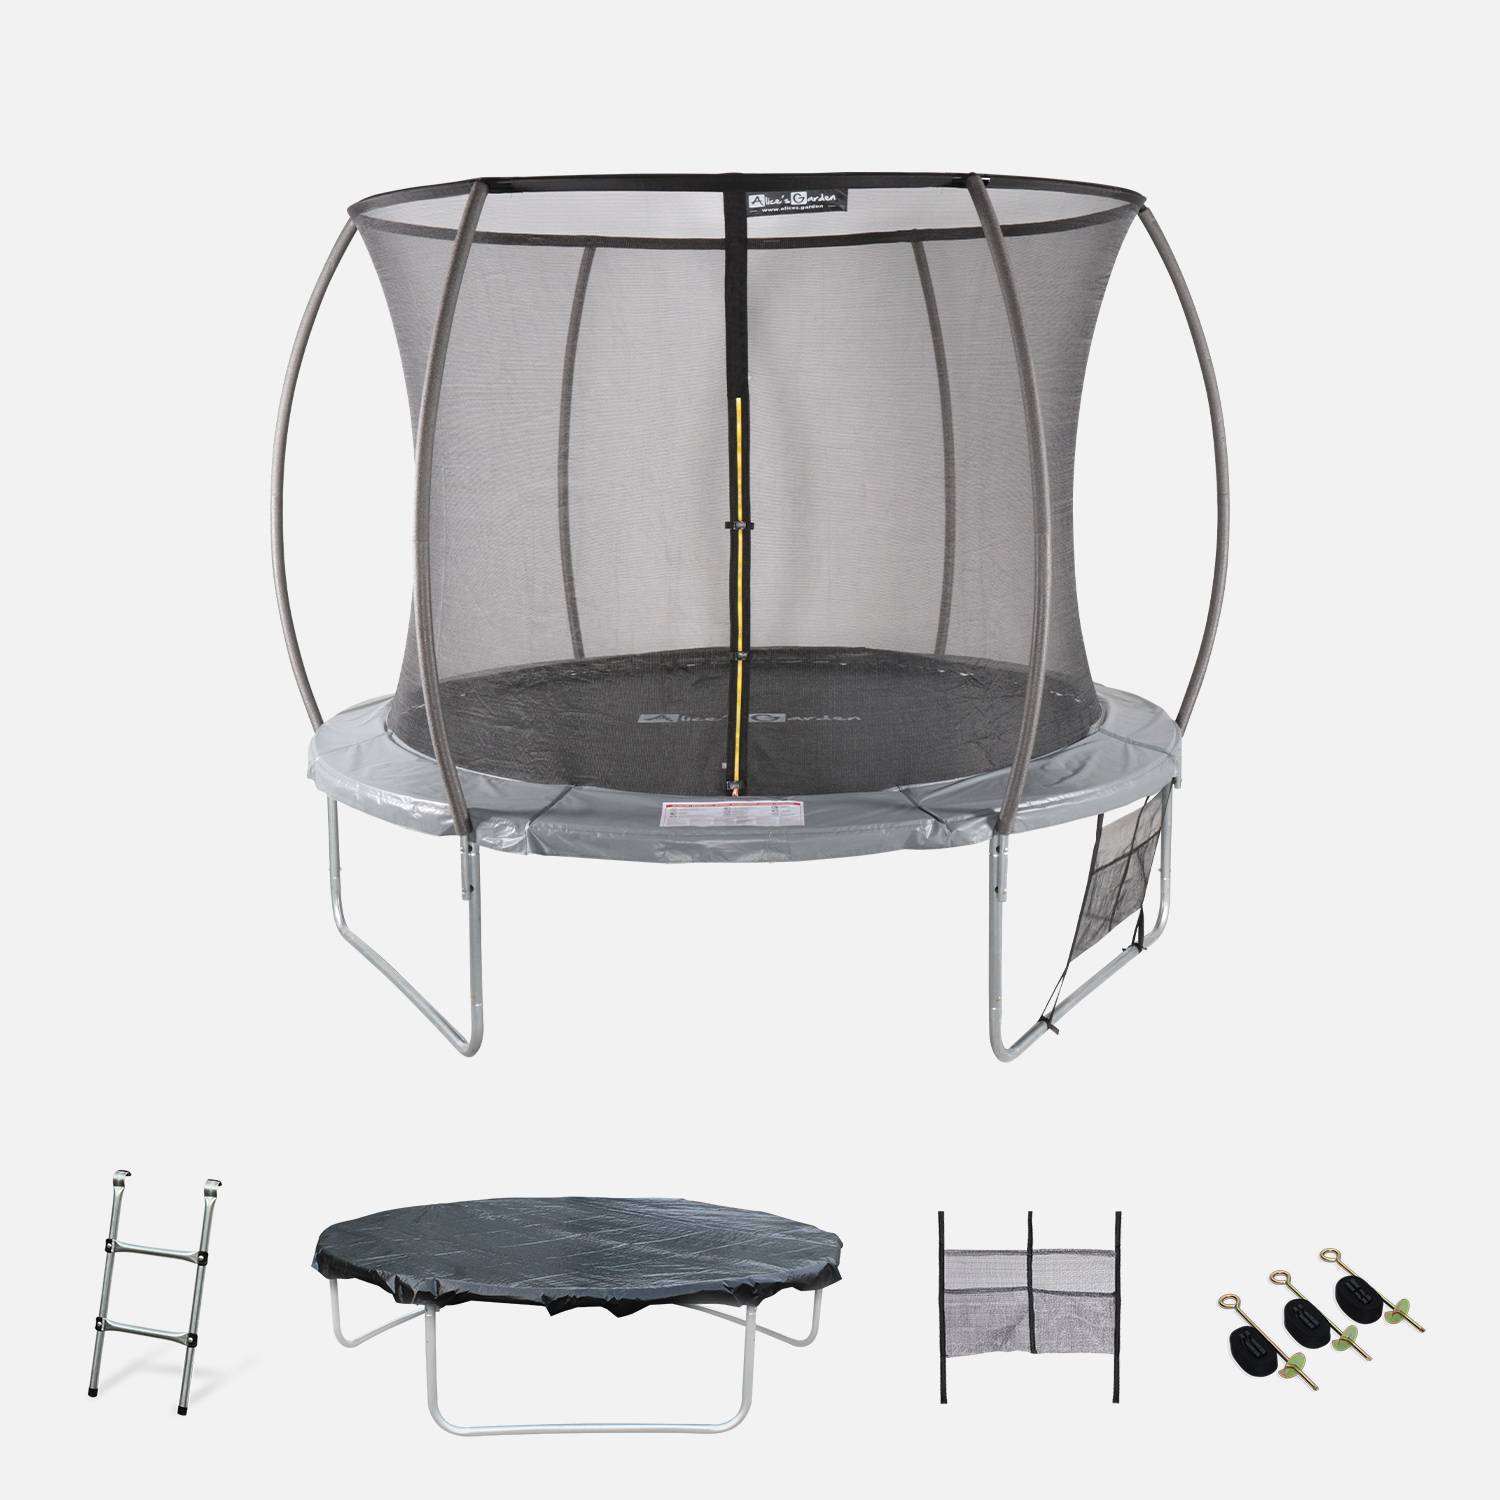 Trampoline Ø 305cm - Mars Inner XXL- trampoline de jardin gris avec filet de protection intérieur, échelle, bâche, filet pour chaussures et kit d'ancrage 3,05m 305cm Photo1